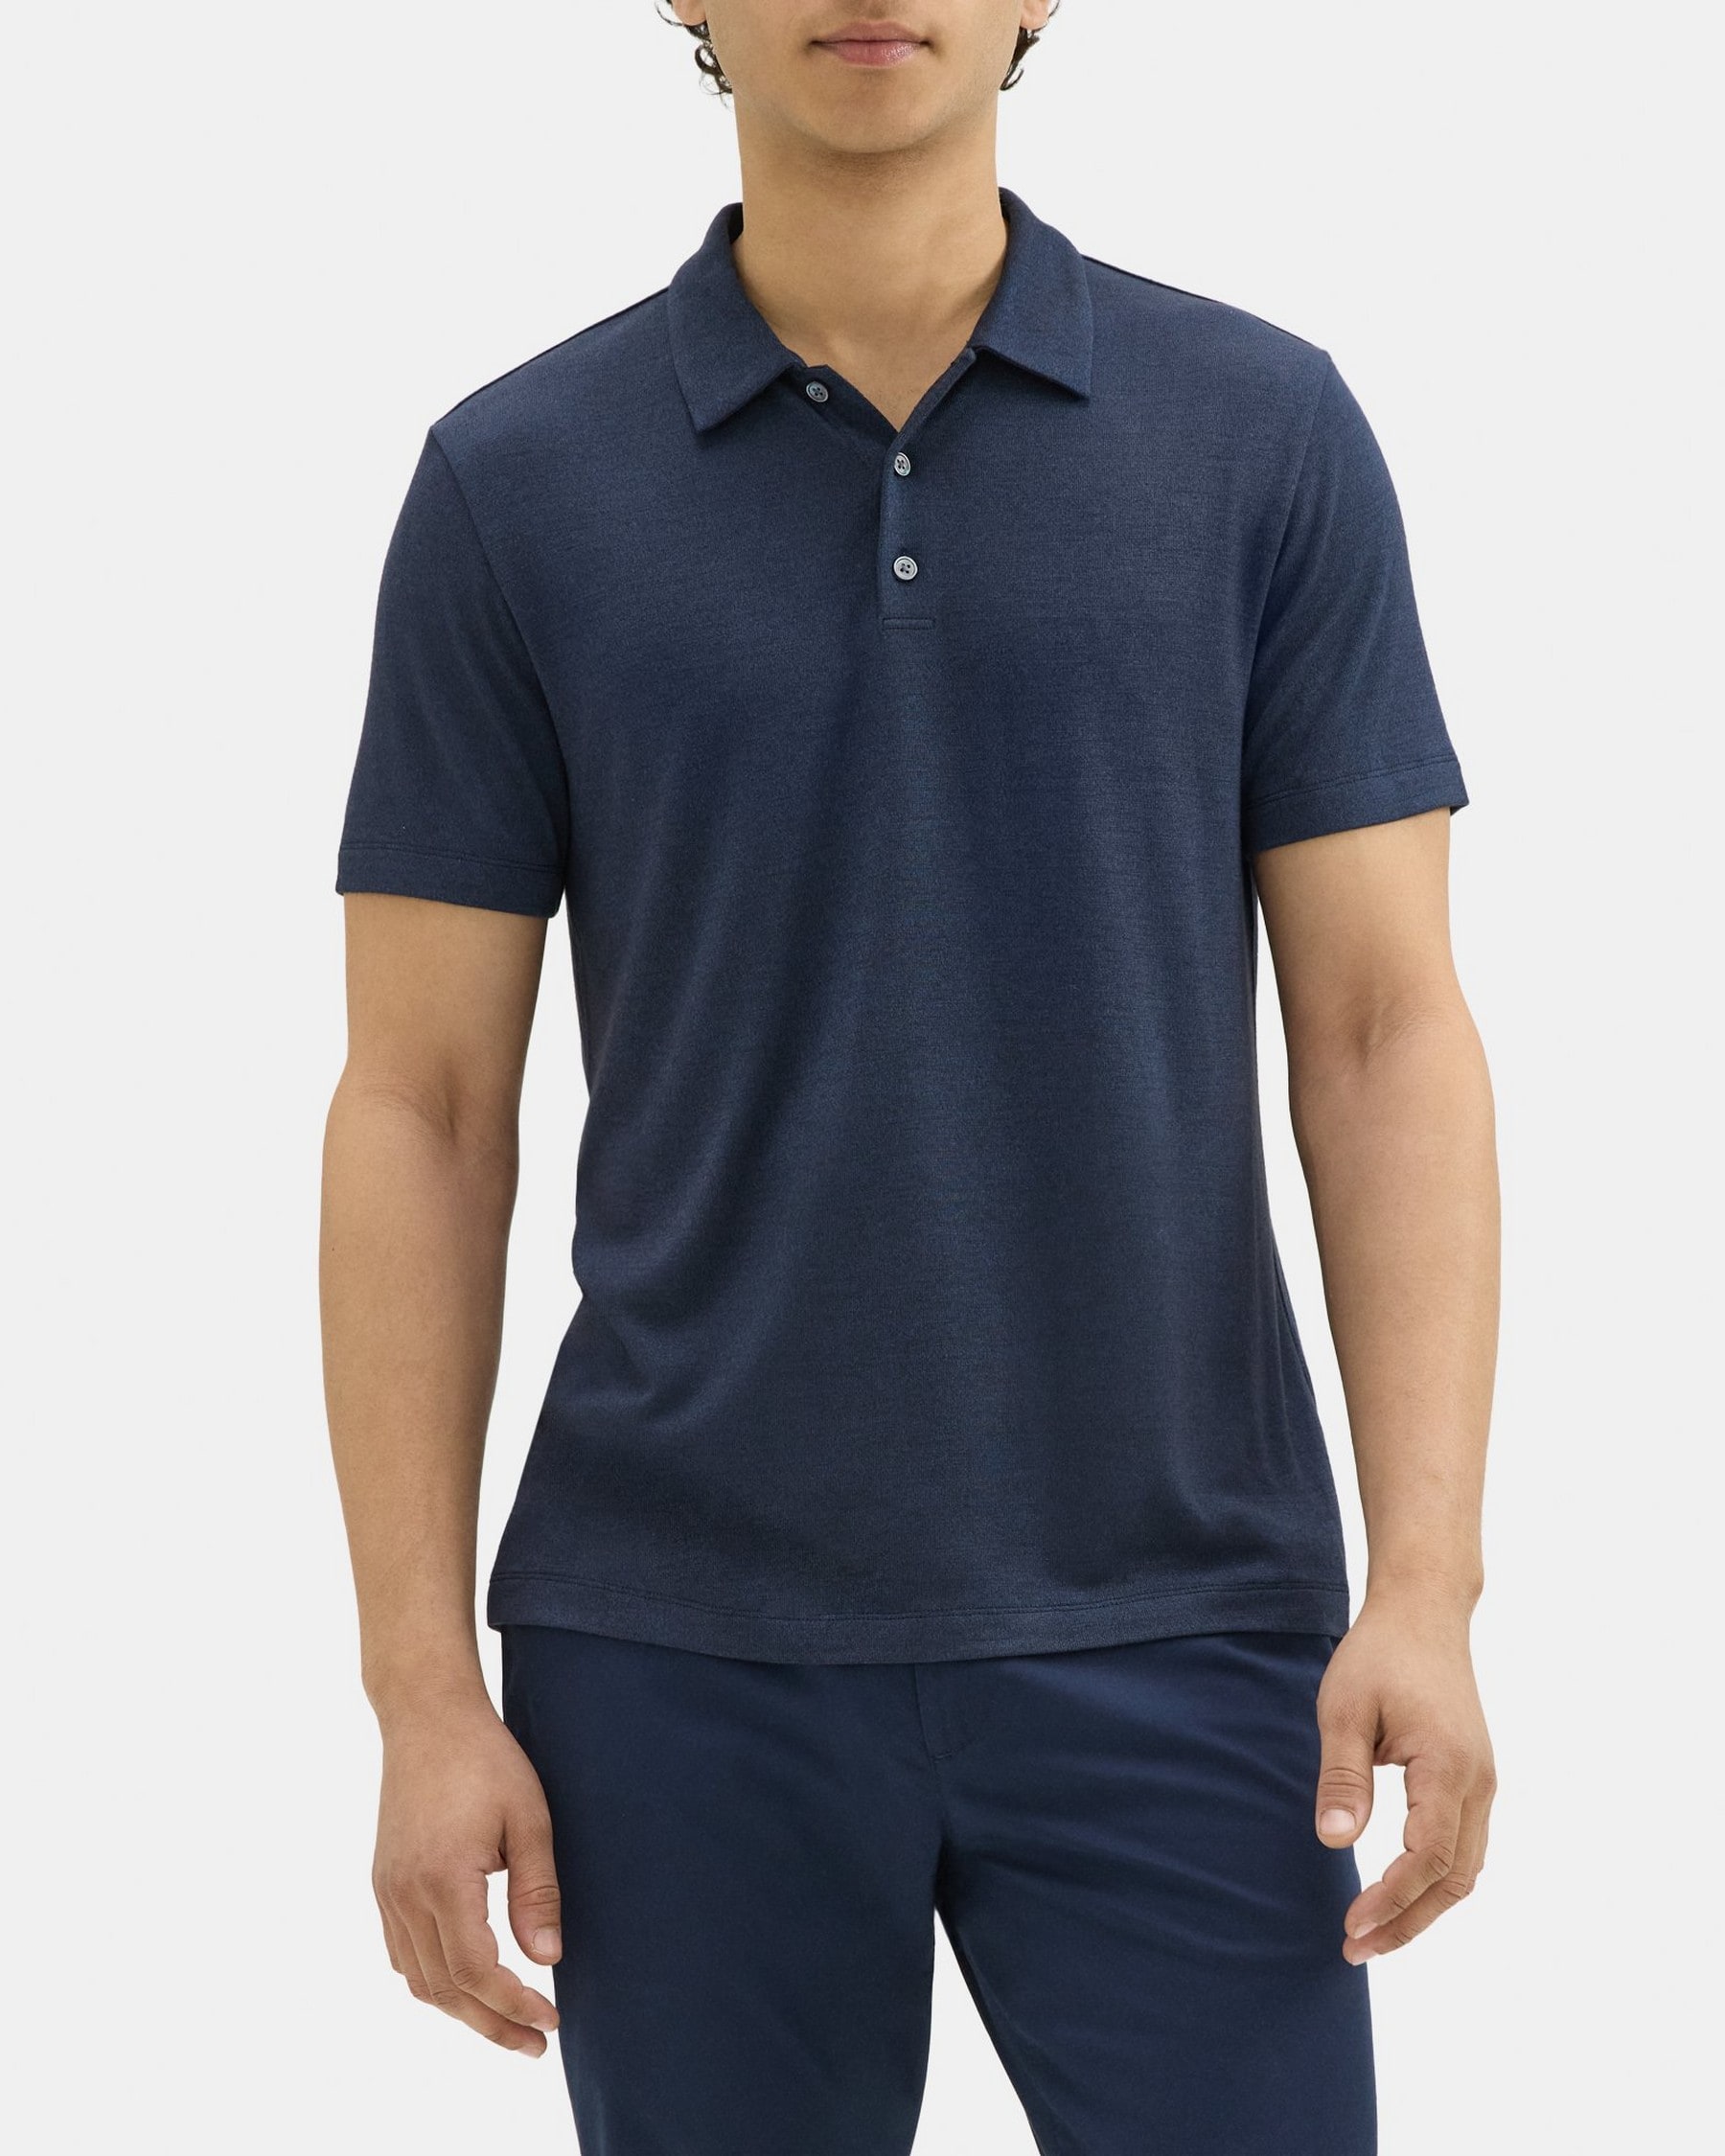 띠어리 Theory Polo Shirt in Modal Blend Jersey,ECLIPSE/SARGASSO